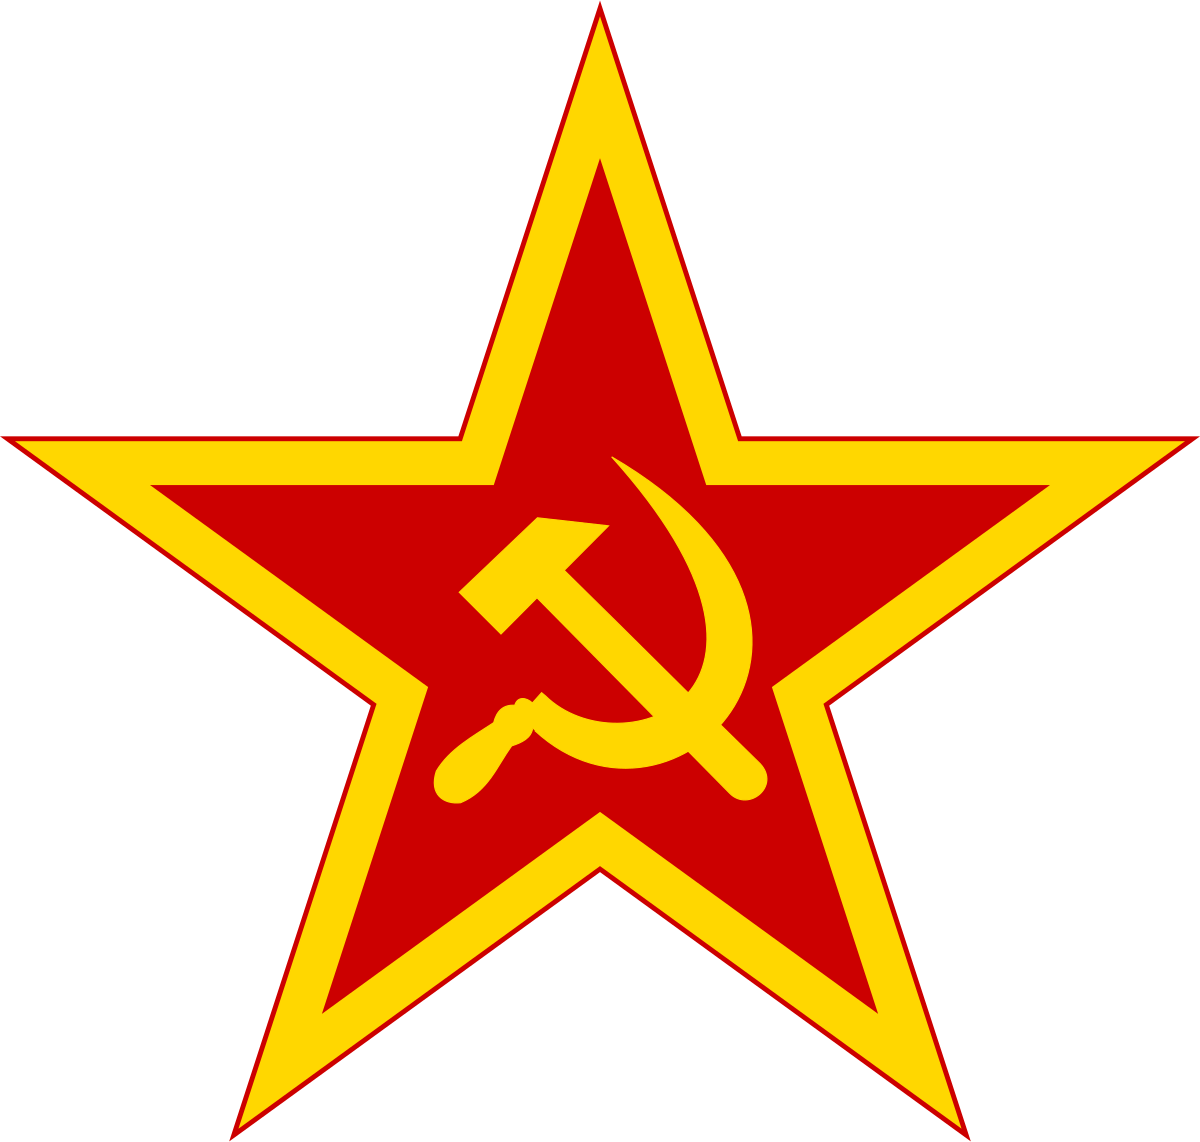 Comunist Logo - Communist symbolism